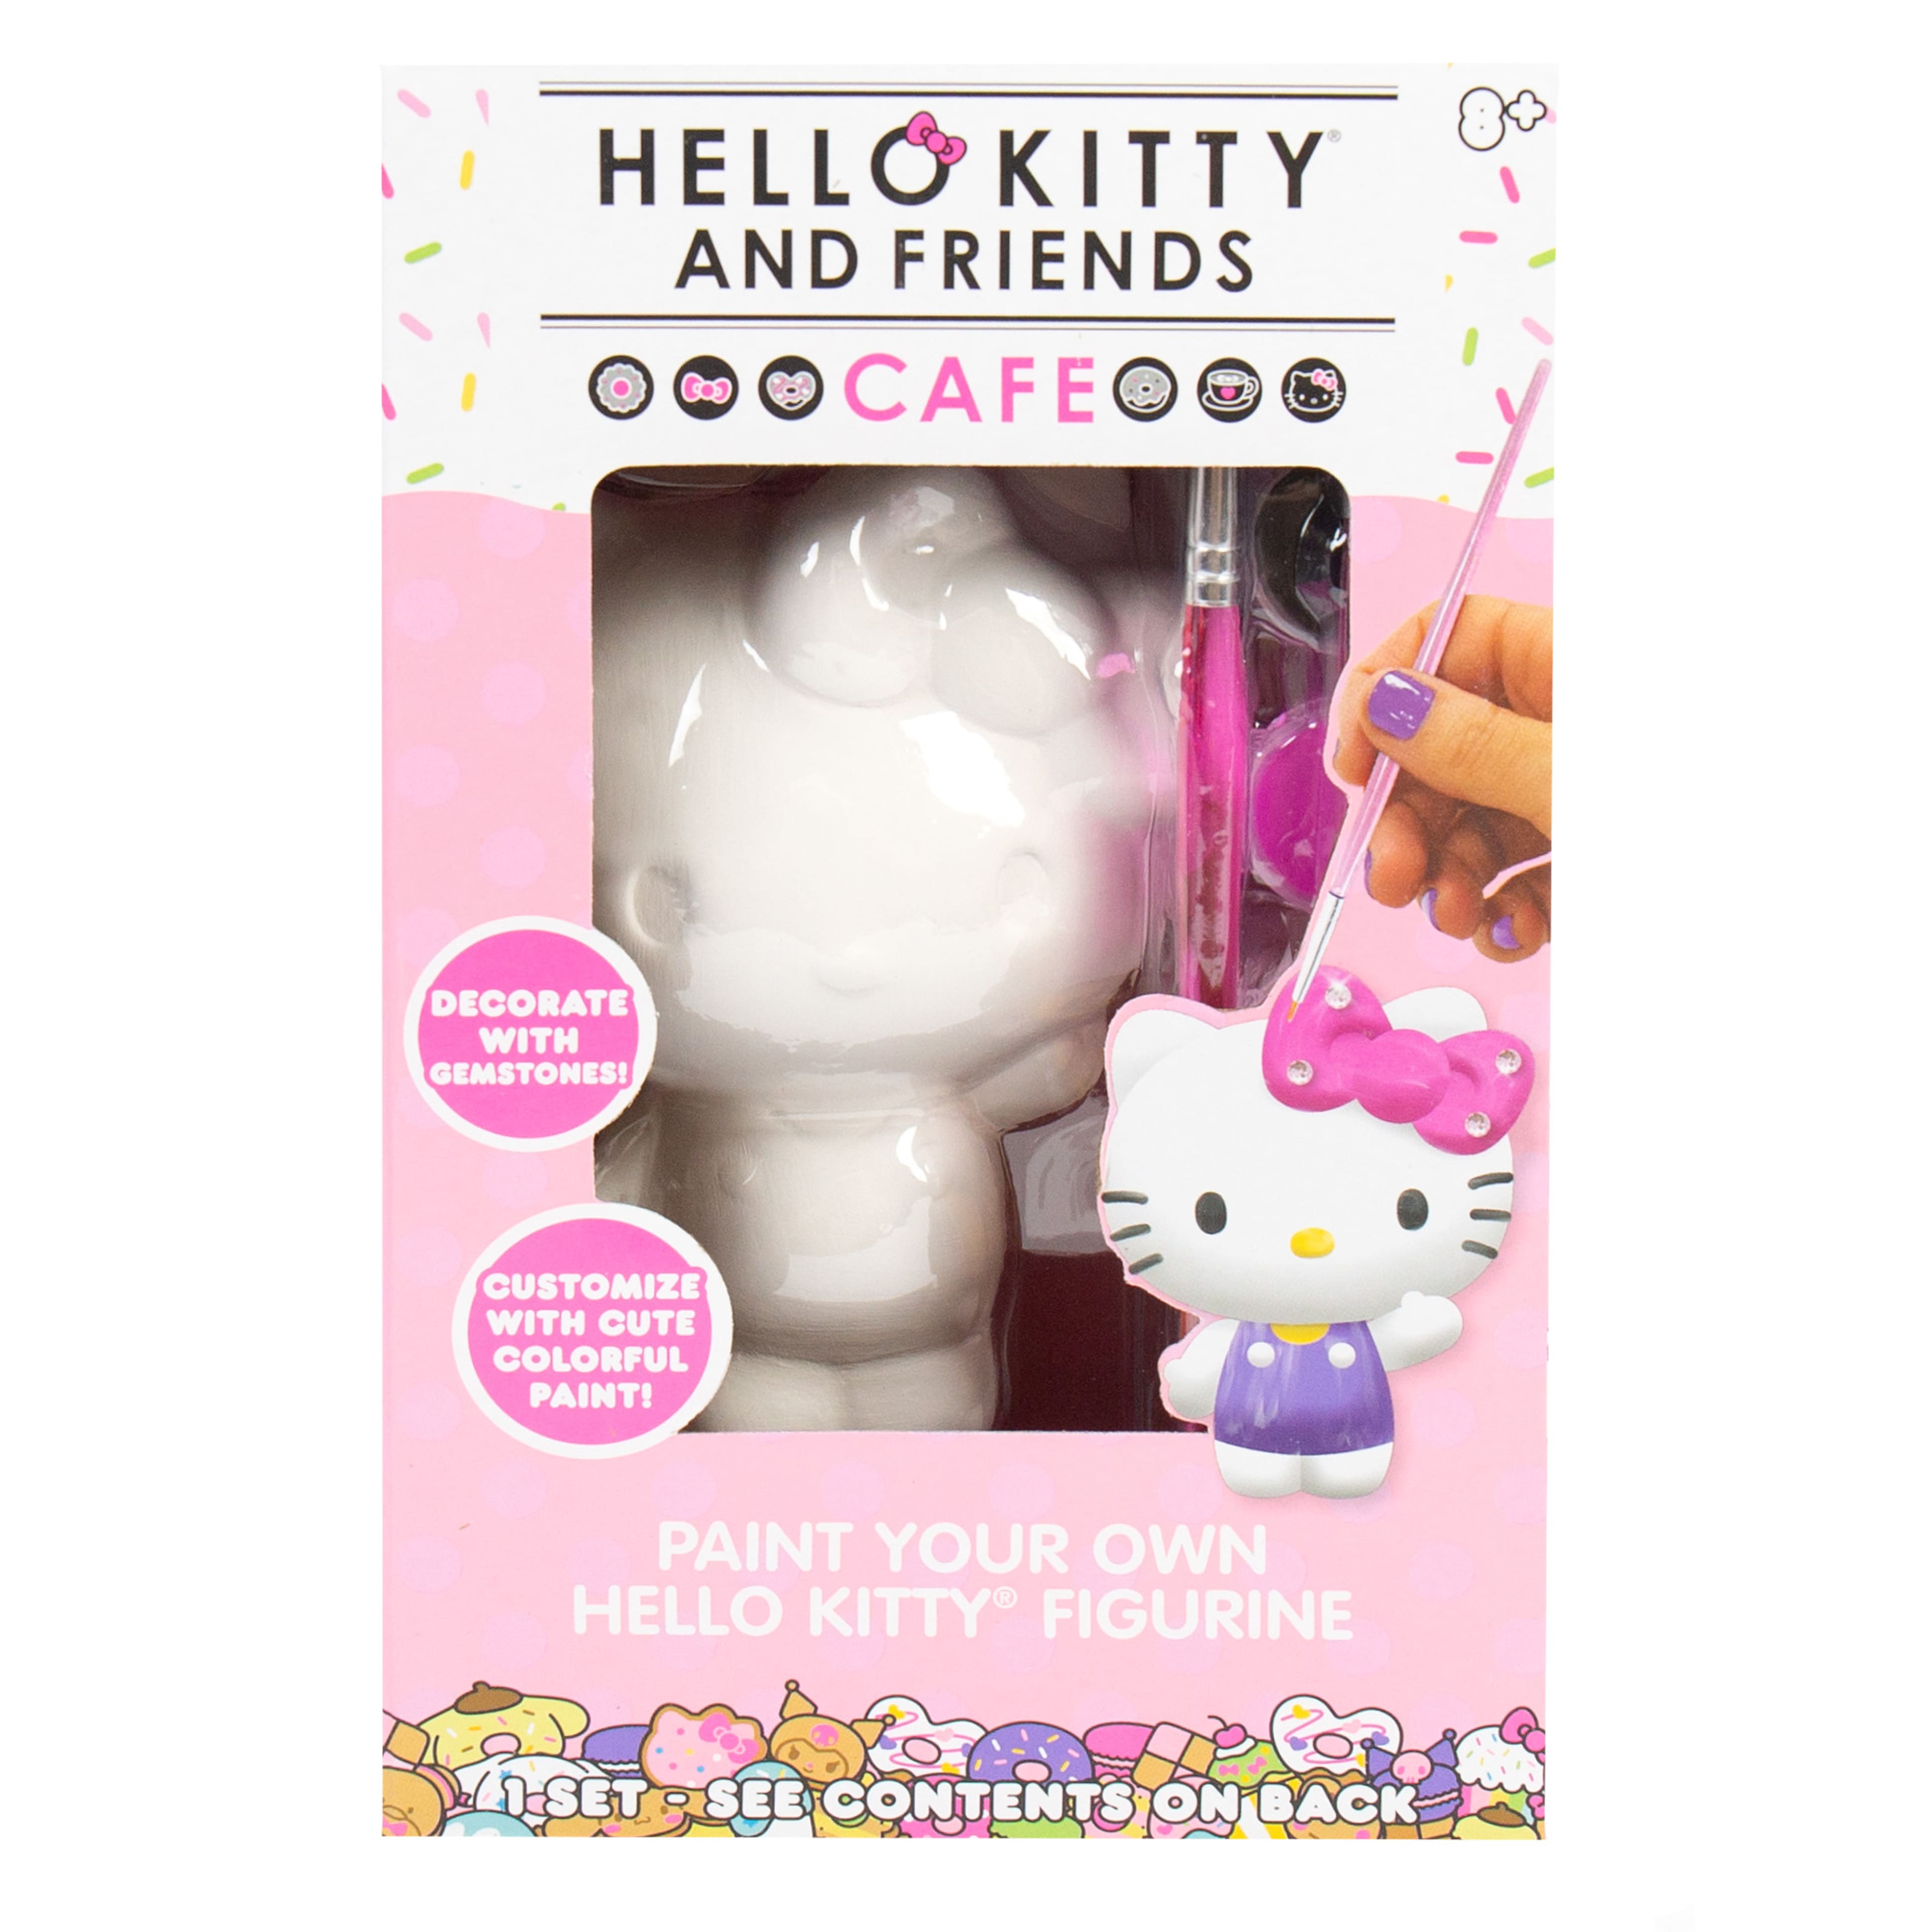 10 Hello Kitty Gifts Under $10 – GSFF